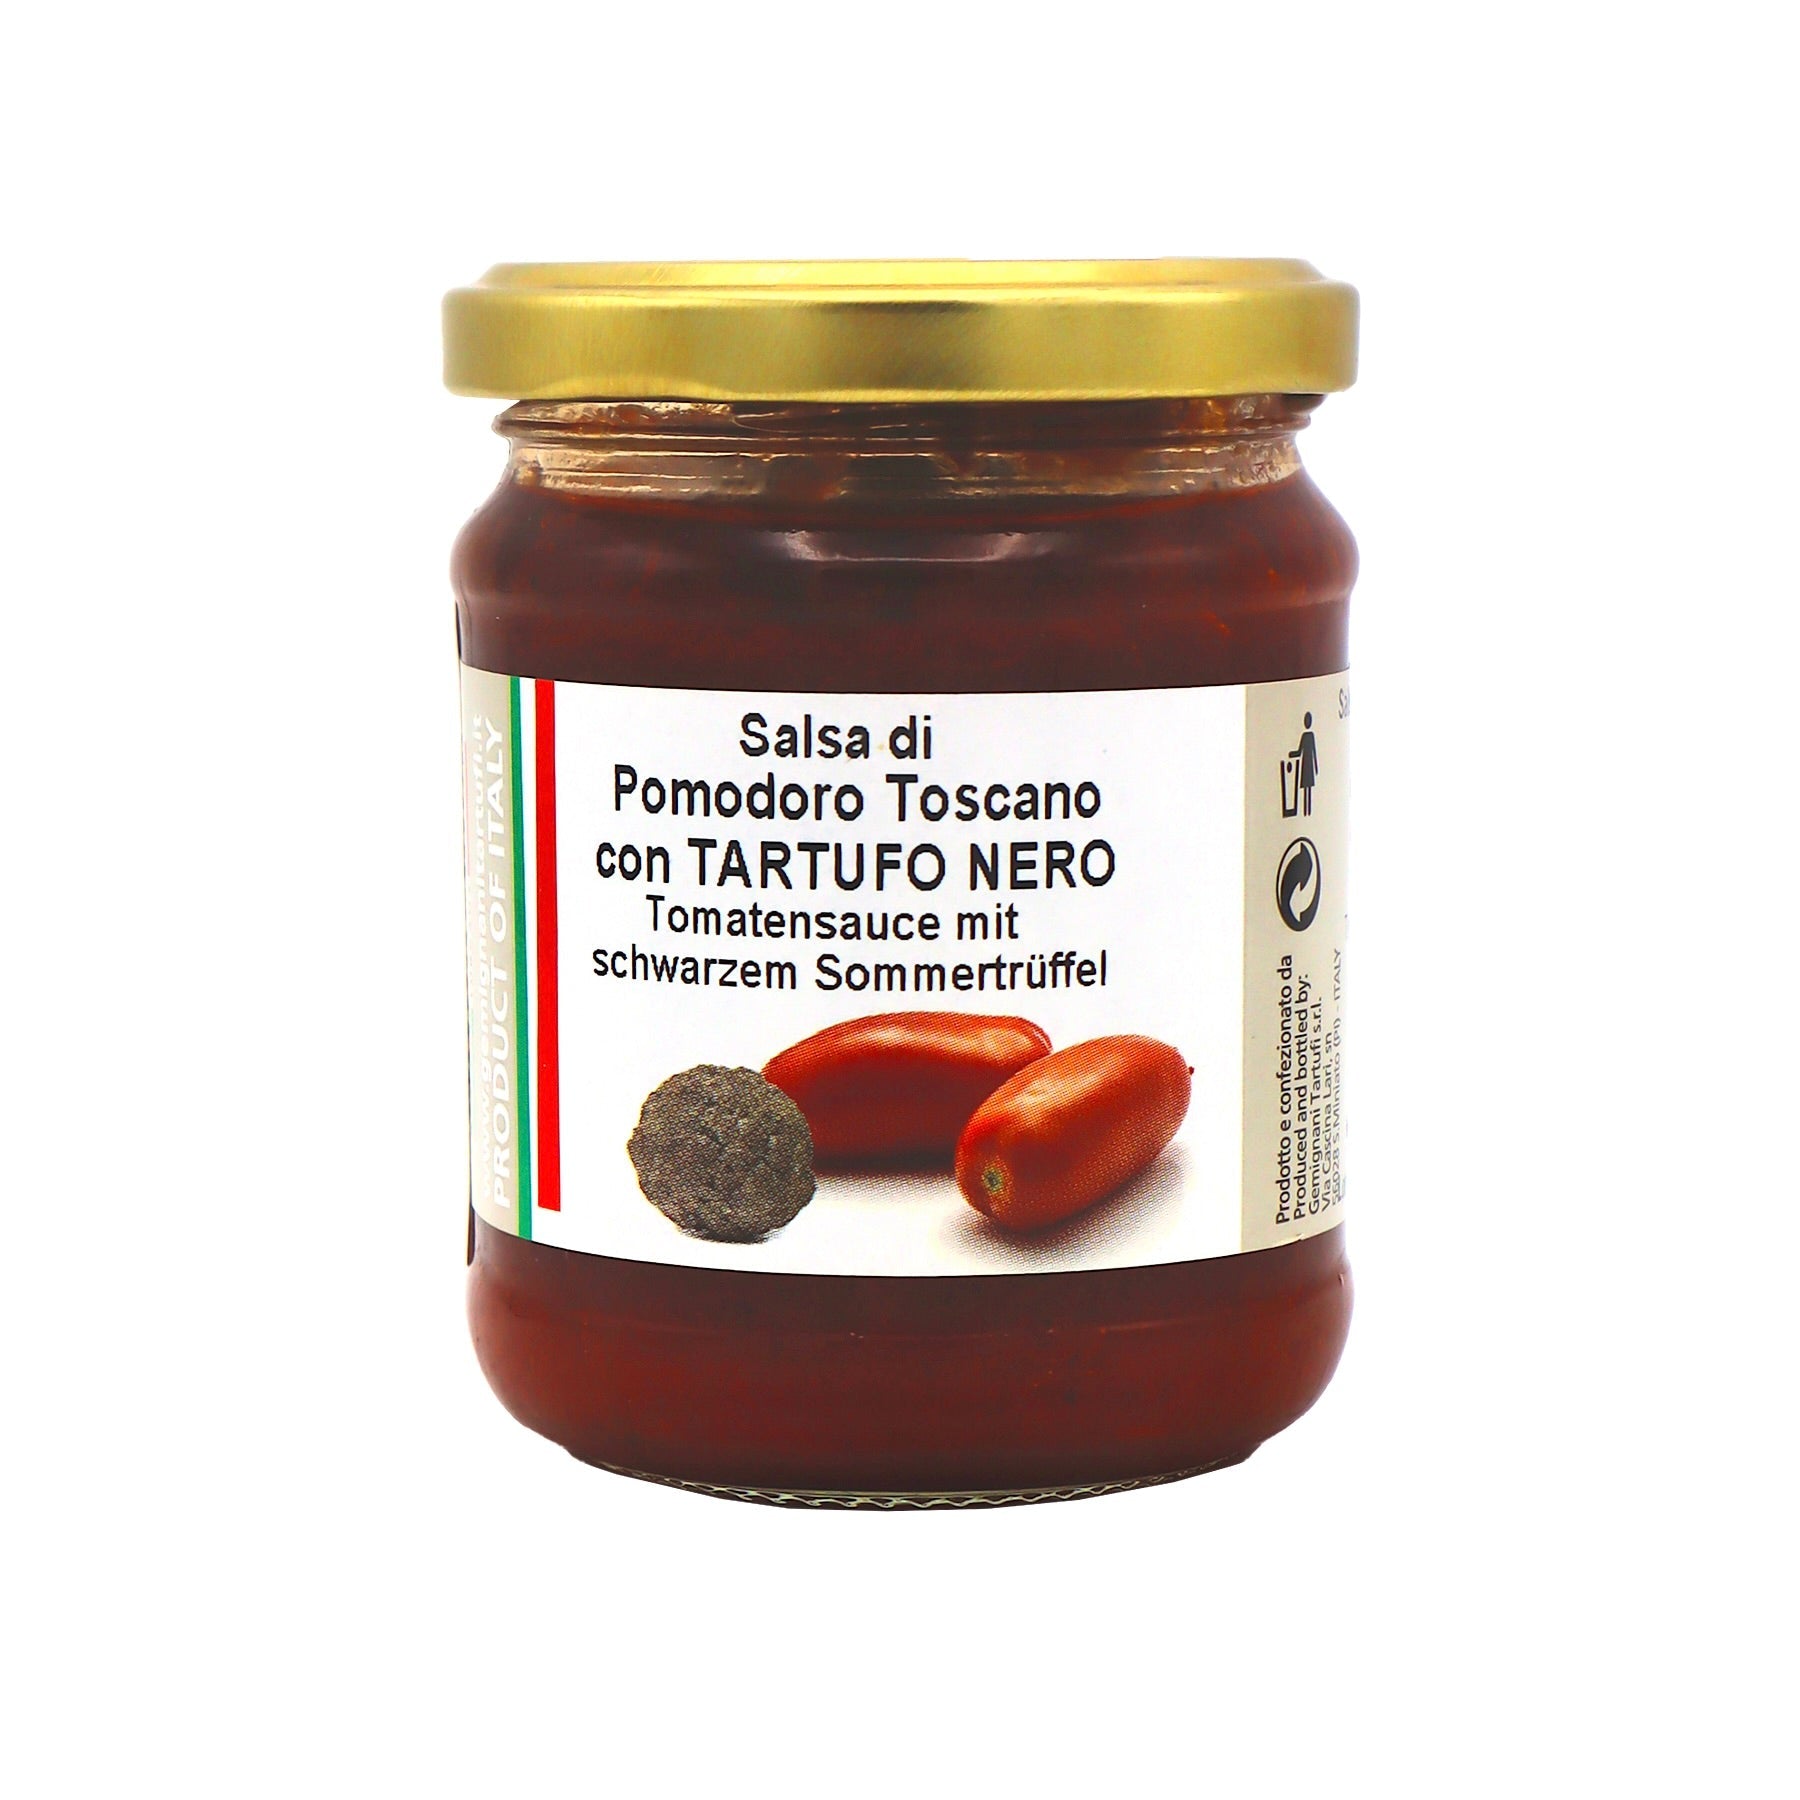 Salsa die Pomodoro Toscano con Tartufo nero, Tomatensauce mit Trüffeln - Genussbote